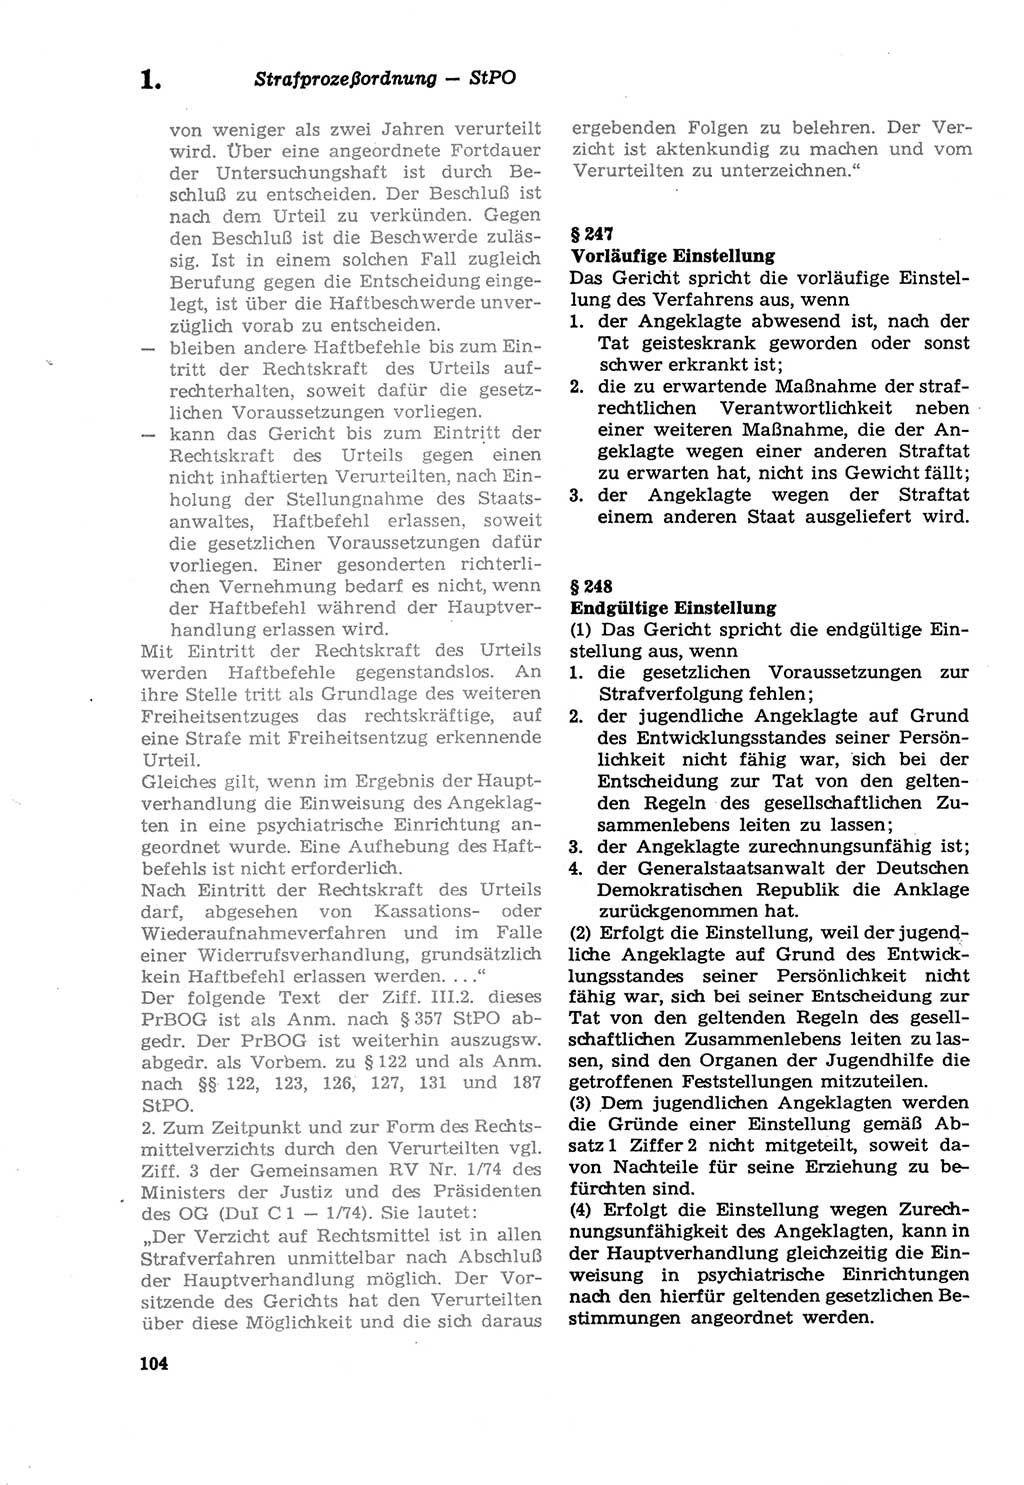 Strafprozeßordnung (StPO) der Deutschen Demokratischen Republik (DDR) sowie angrenzende Gesetze und Bestimmungen 1979, Seite 104 (StPO DDR Ges. Best. 1979, S. 104)